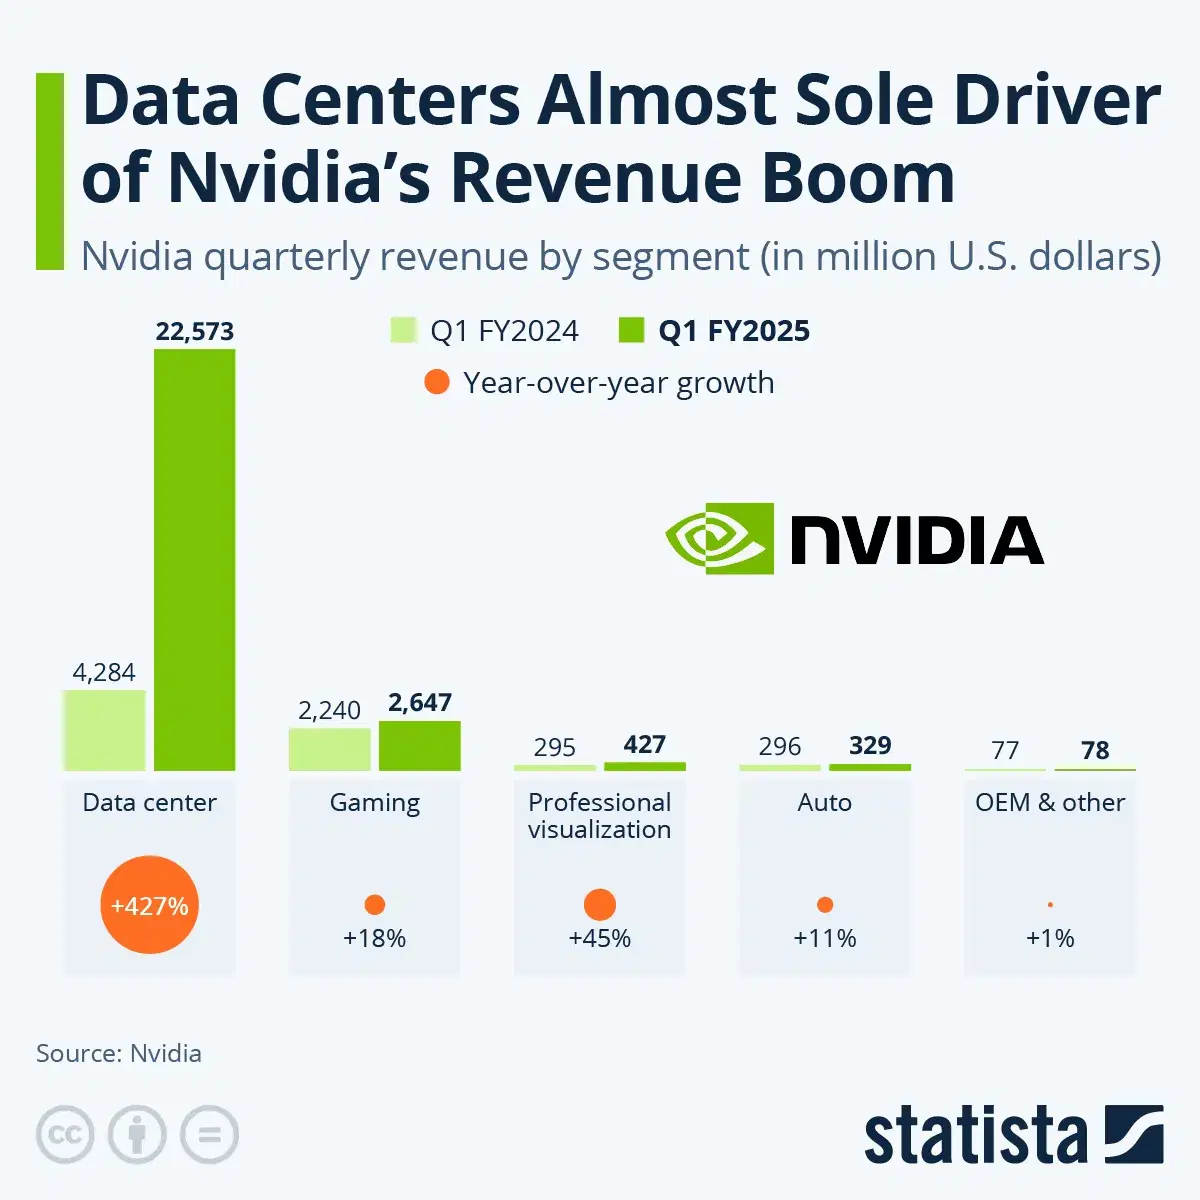 Data Centers Almost Sole Driver of Nvidia's Revenue Boom